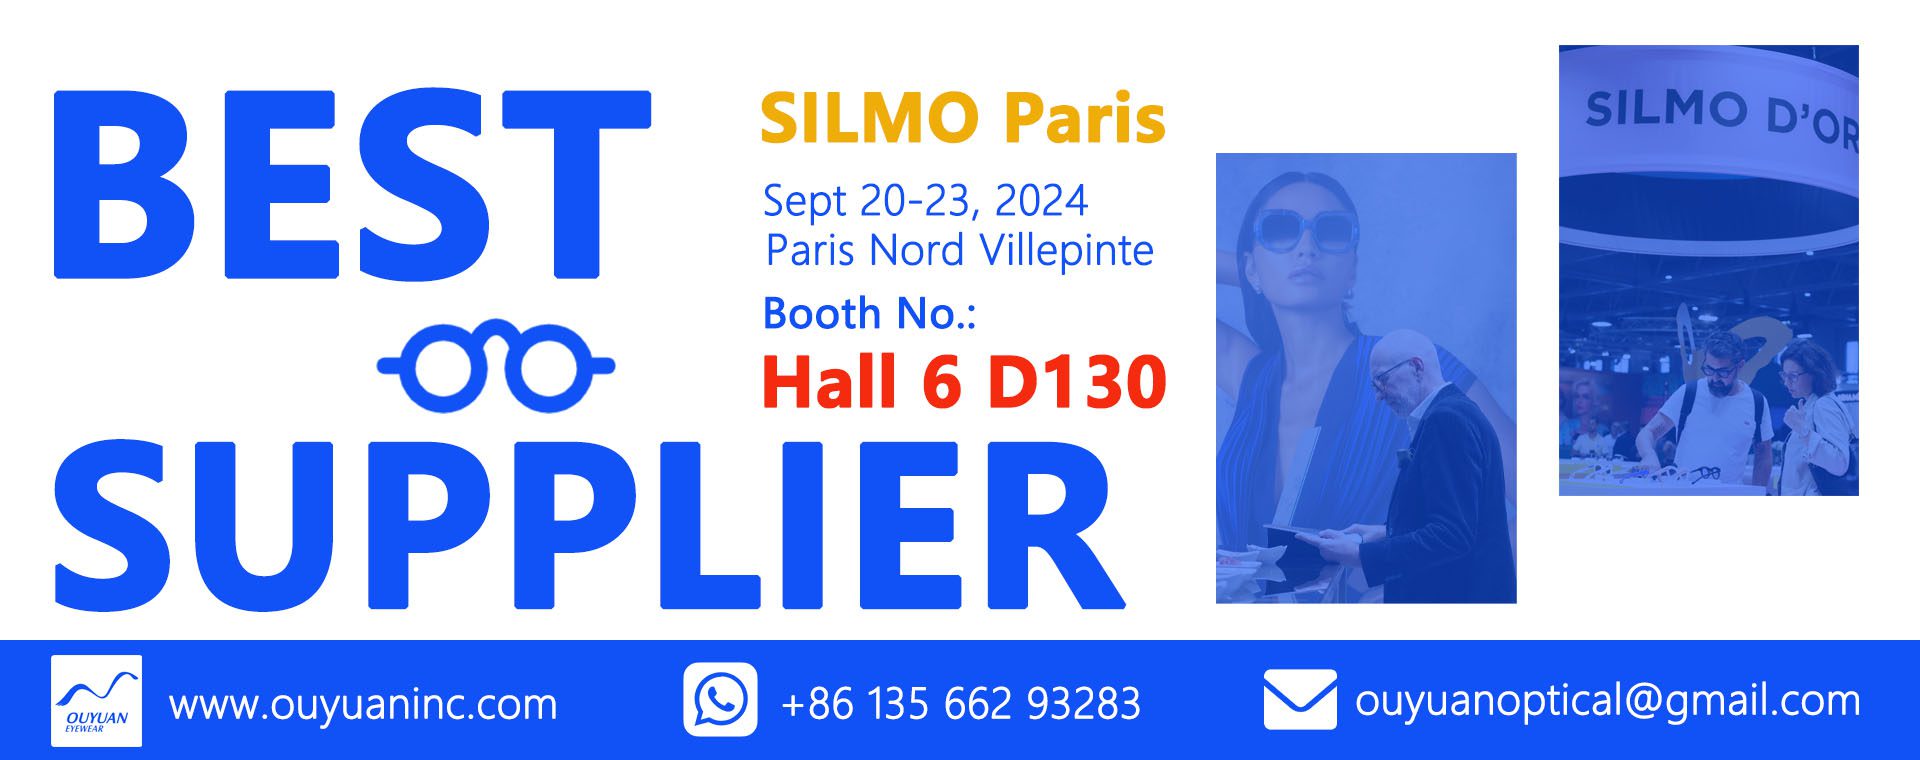 2024 SILMO Paris - Banner - Dates - Location - SILMO Paris - SILMO Fair Paris